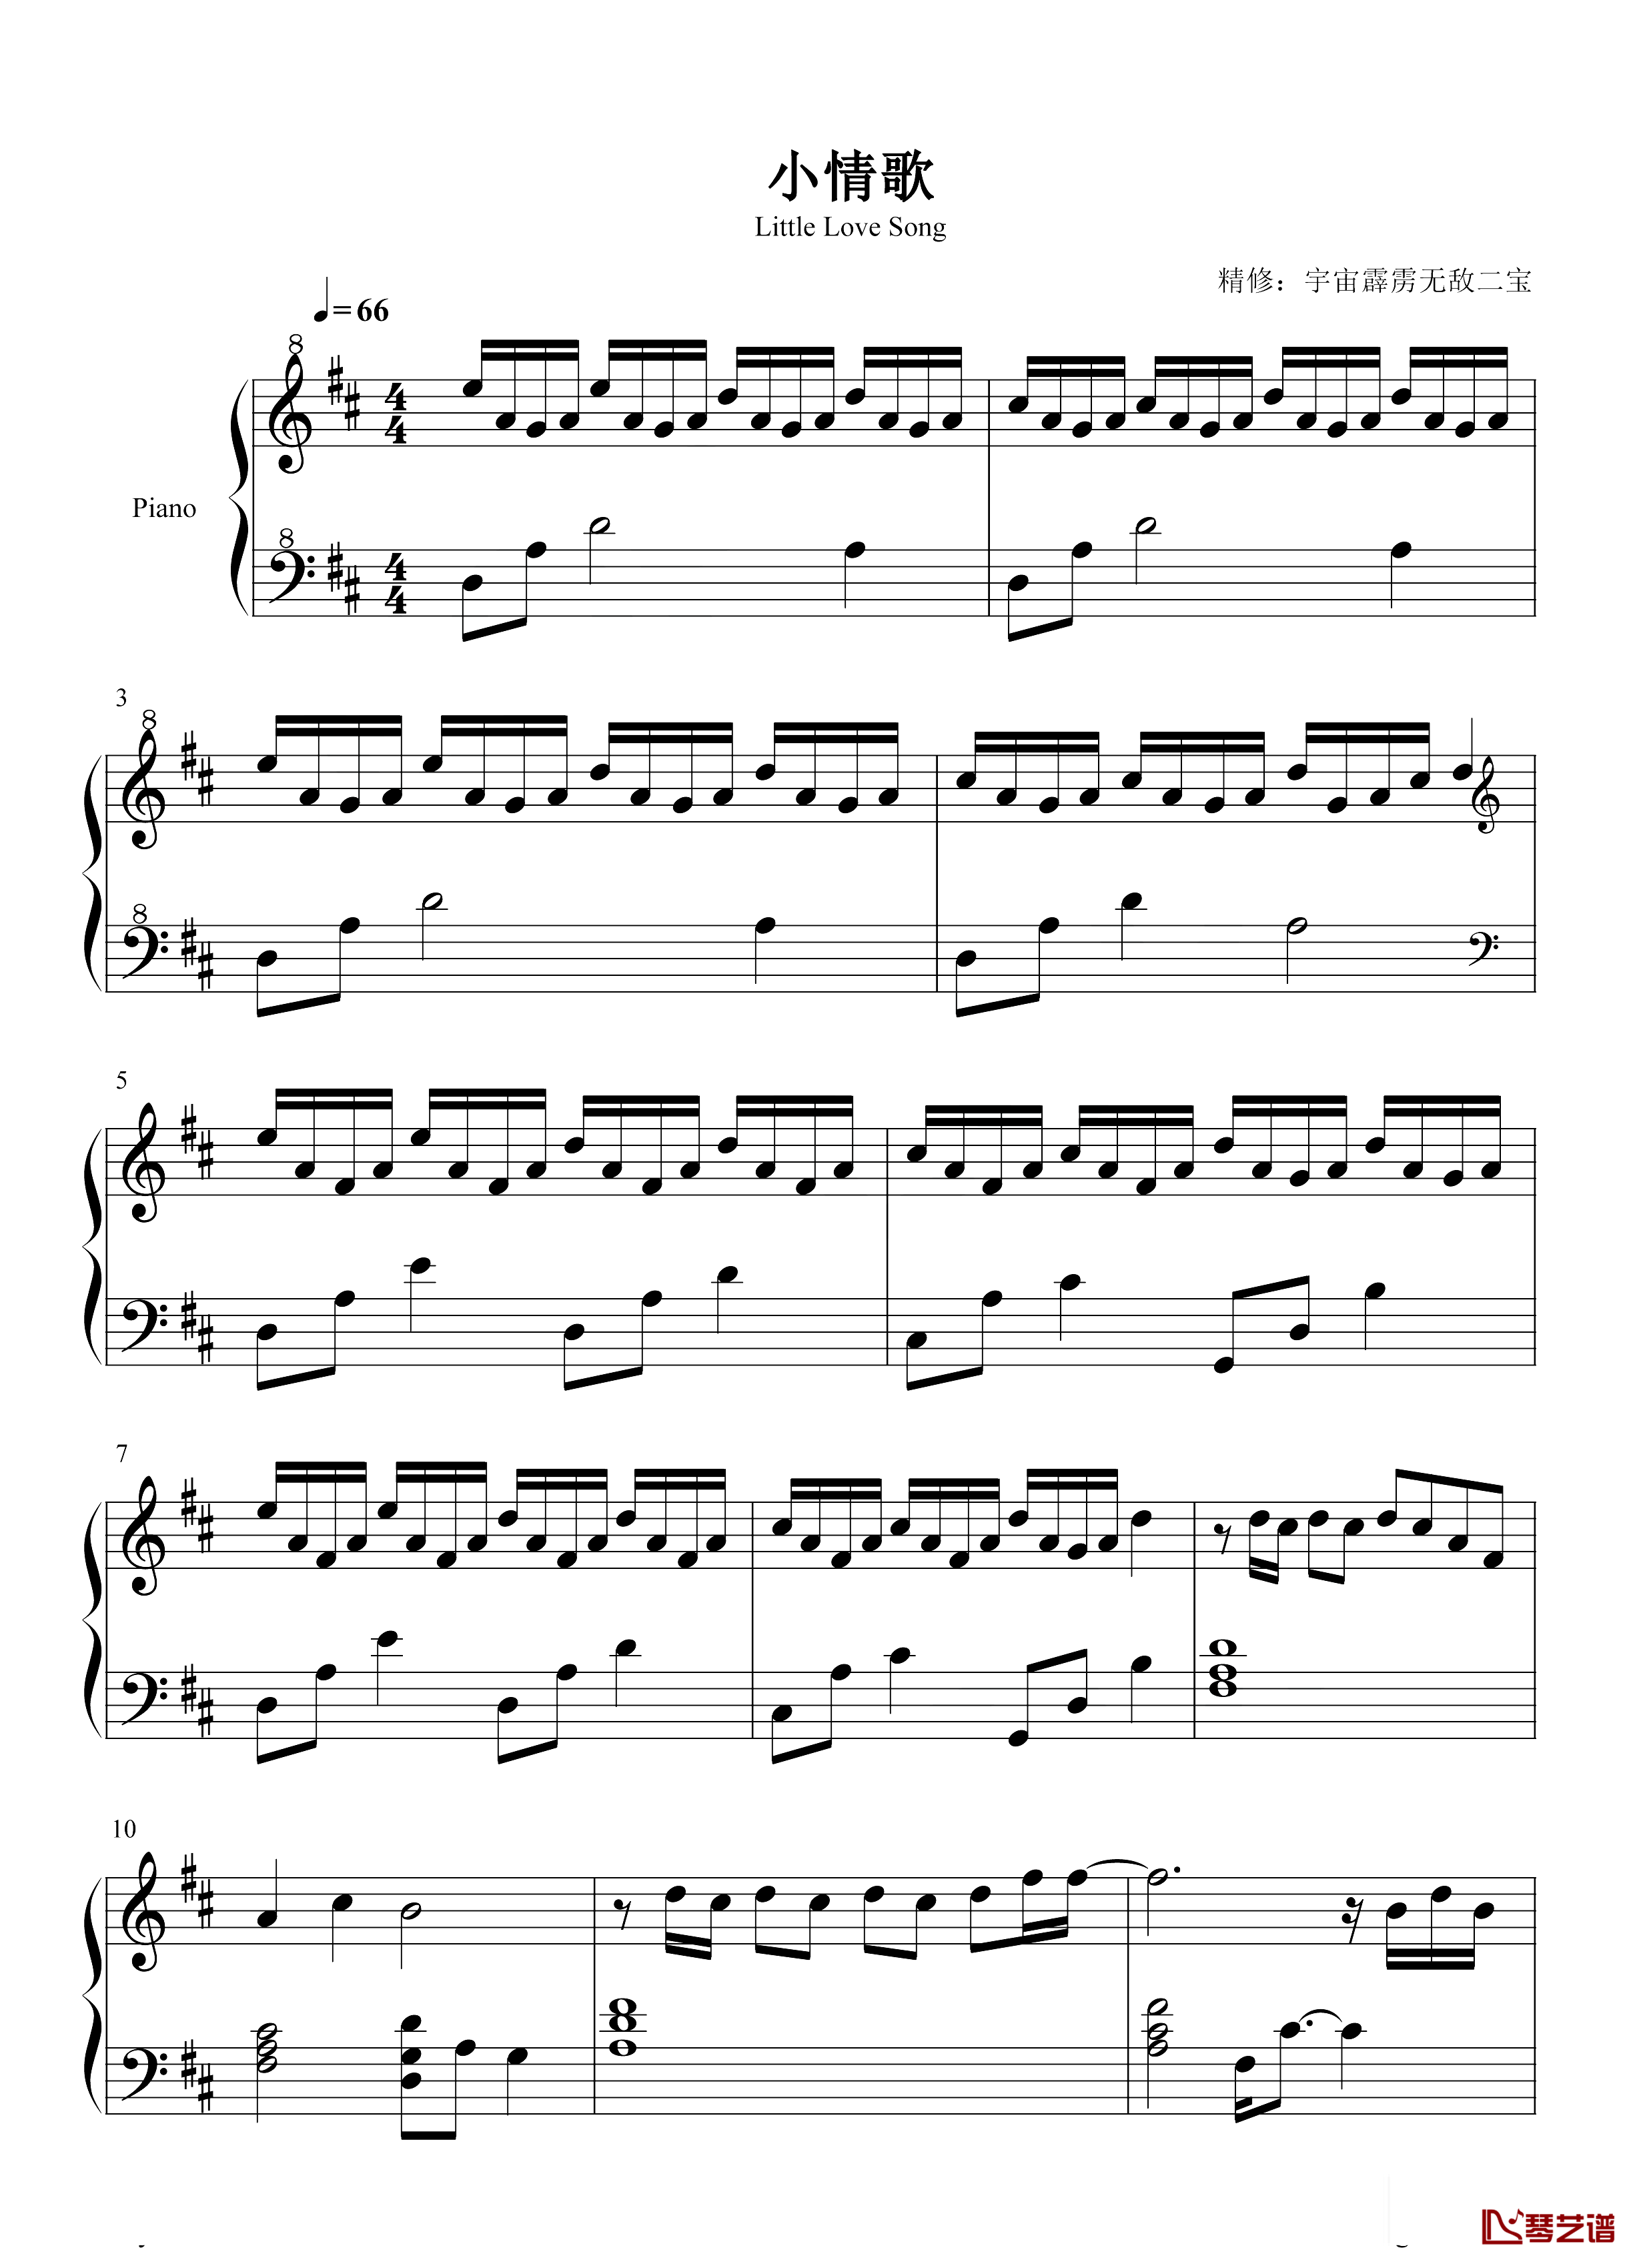 小情歌钢琴谱-苏打绿-是苏打绿的经典曲目-电影《六号出口》的插曲。1